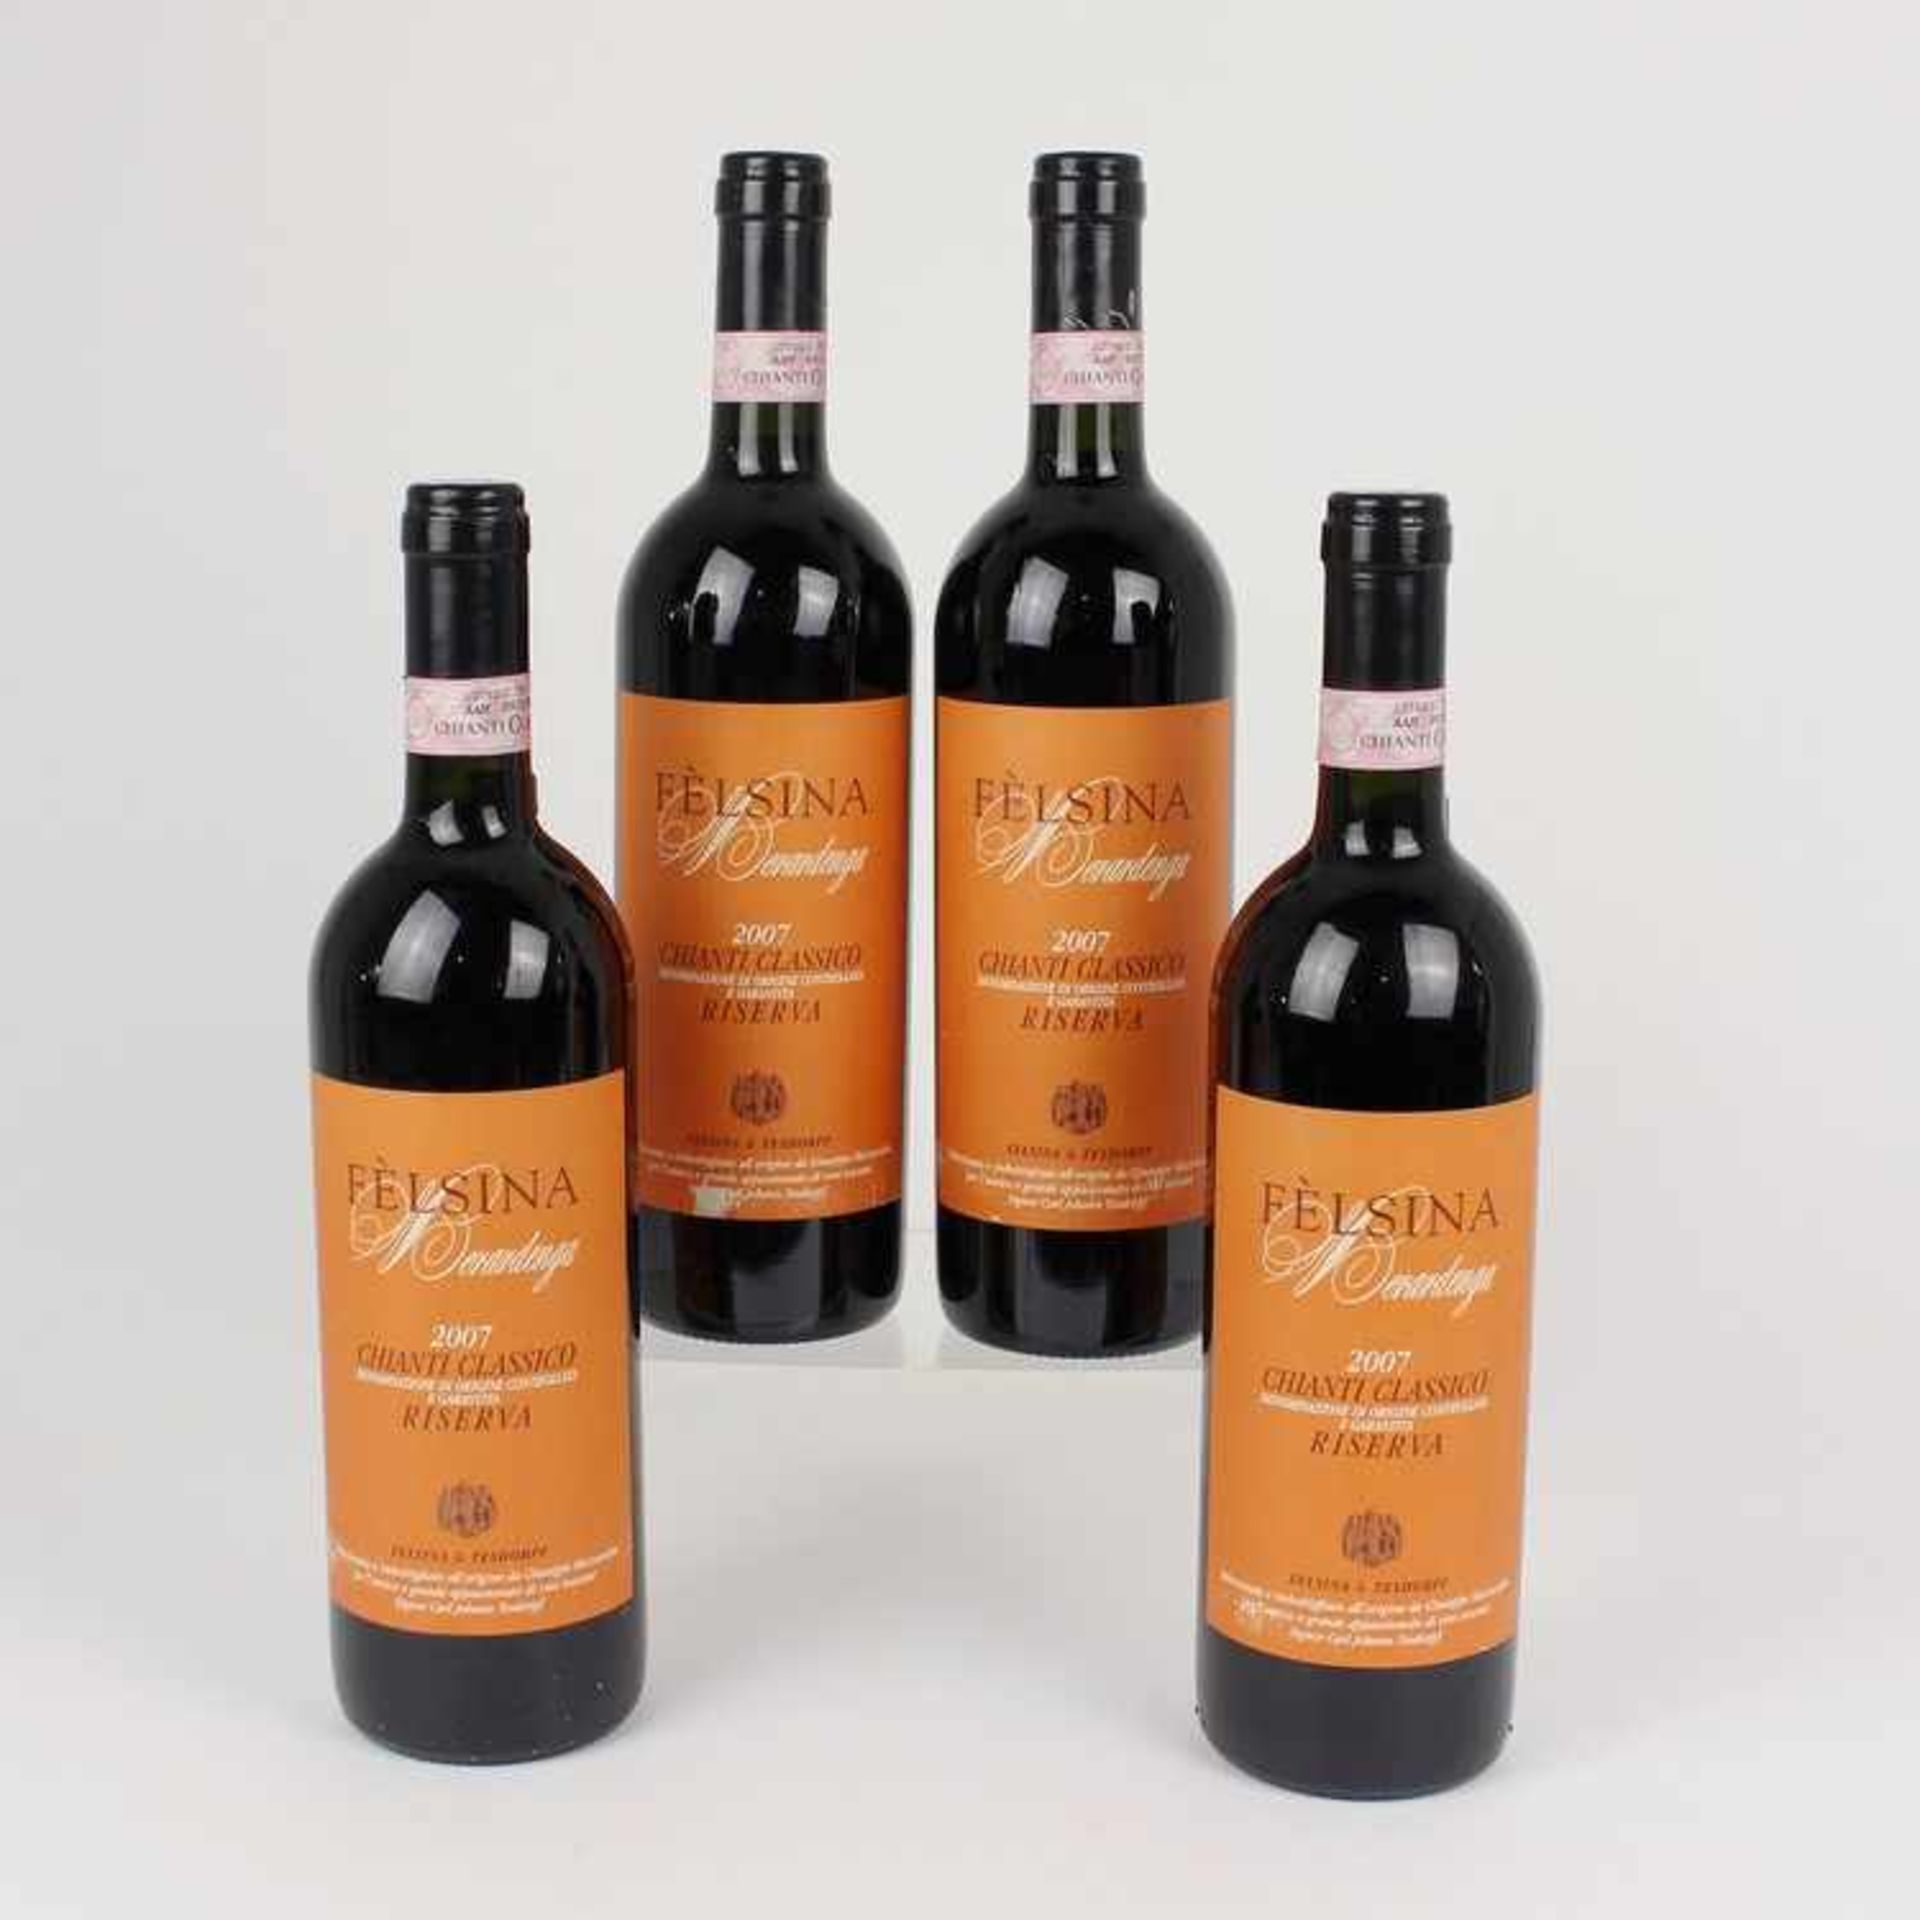 Rotwein4 Fl., Italien, Félsina, Chianti Classico Riserva 2007, 750 ml, 13,5 %, into neck